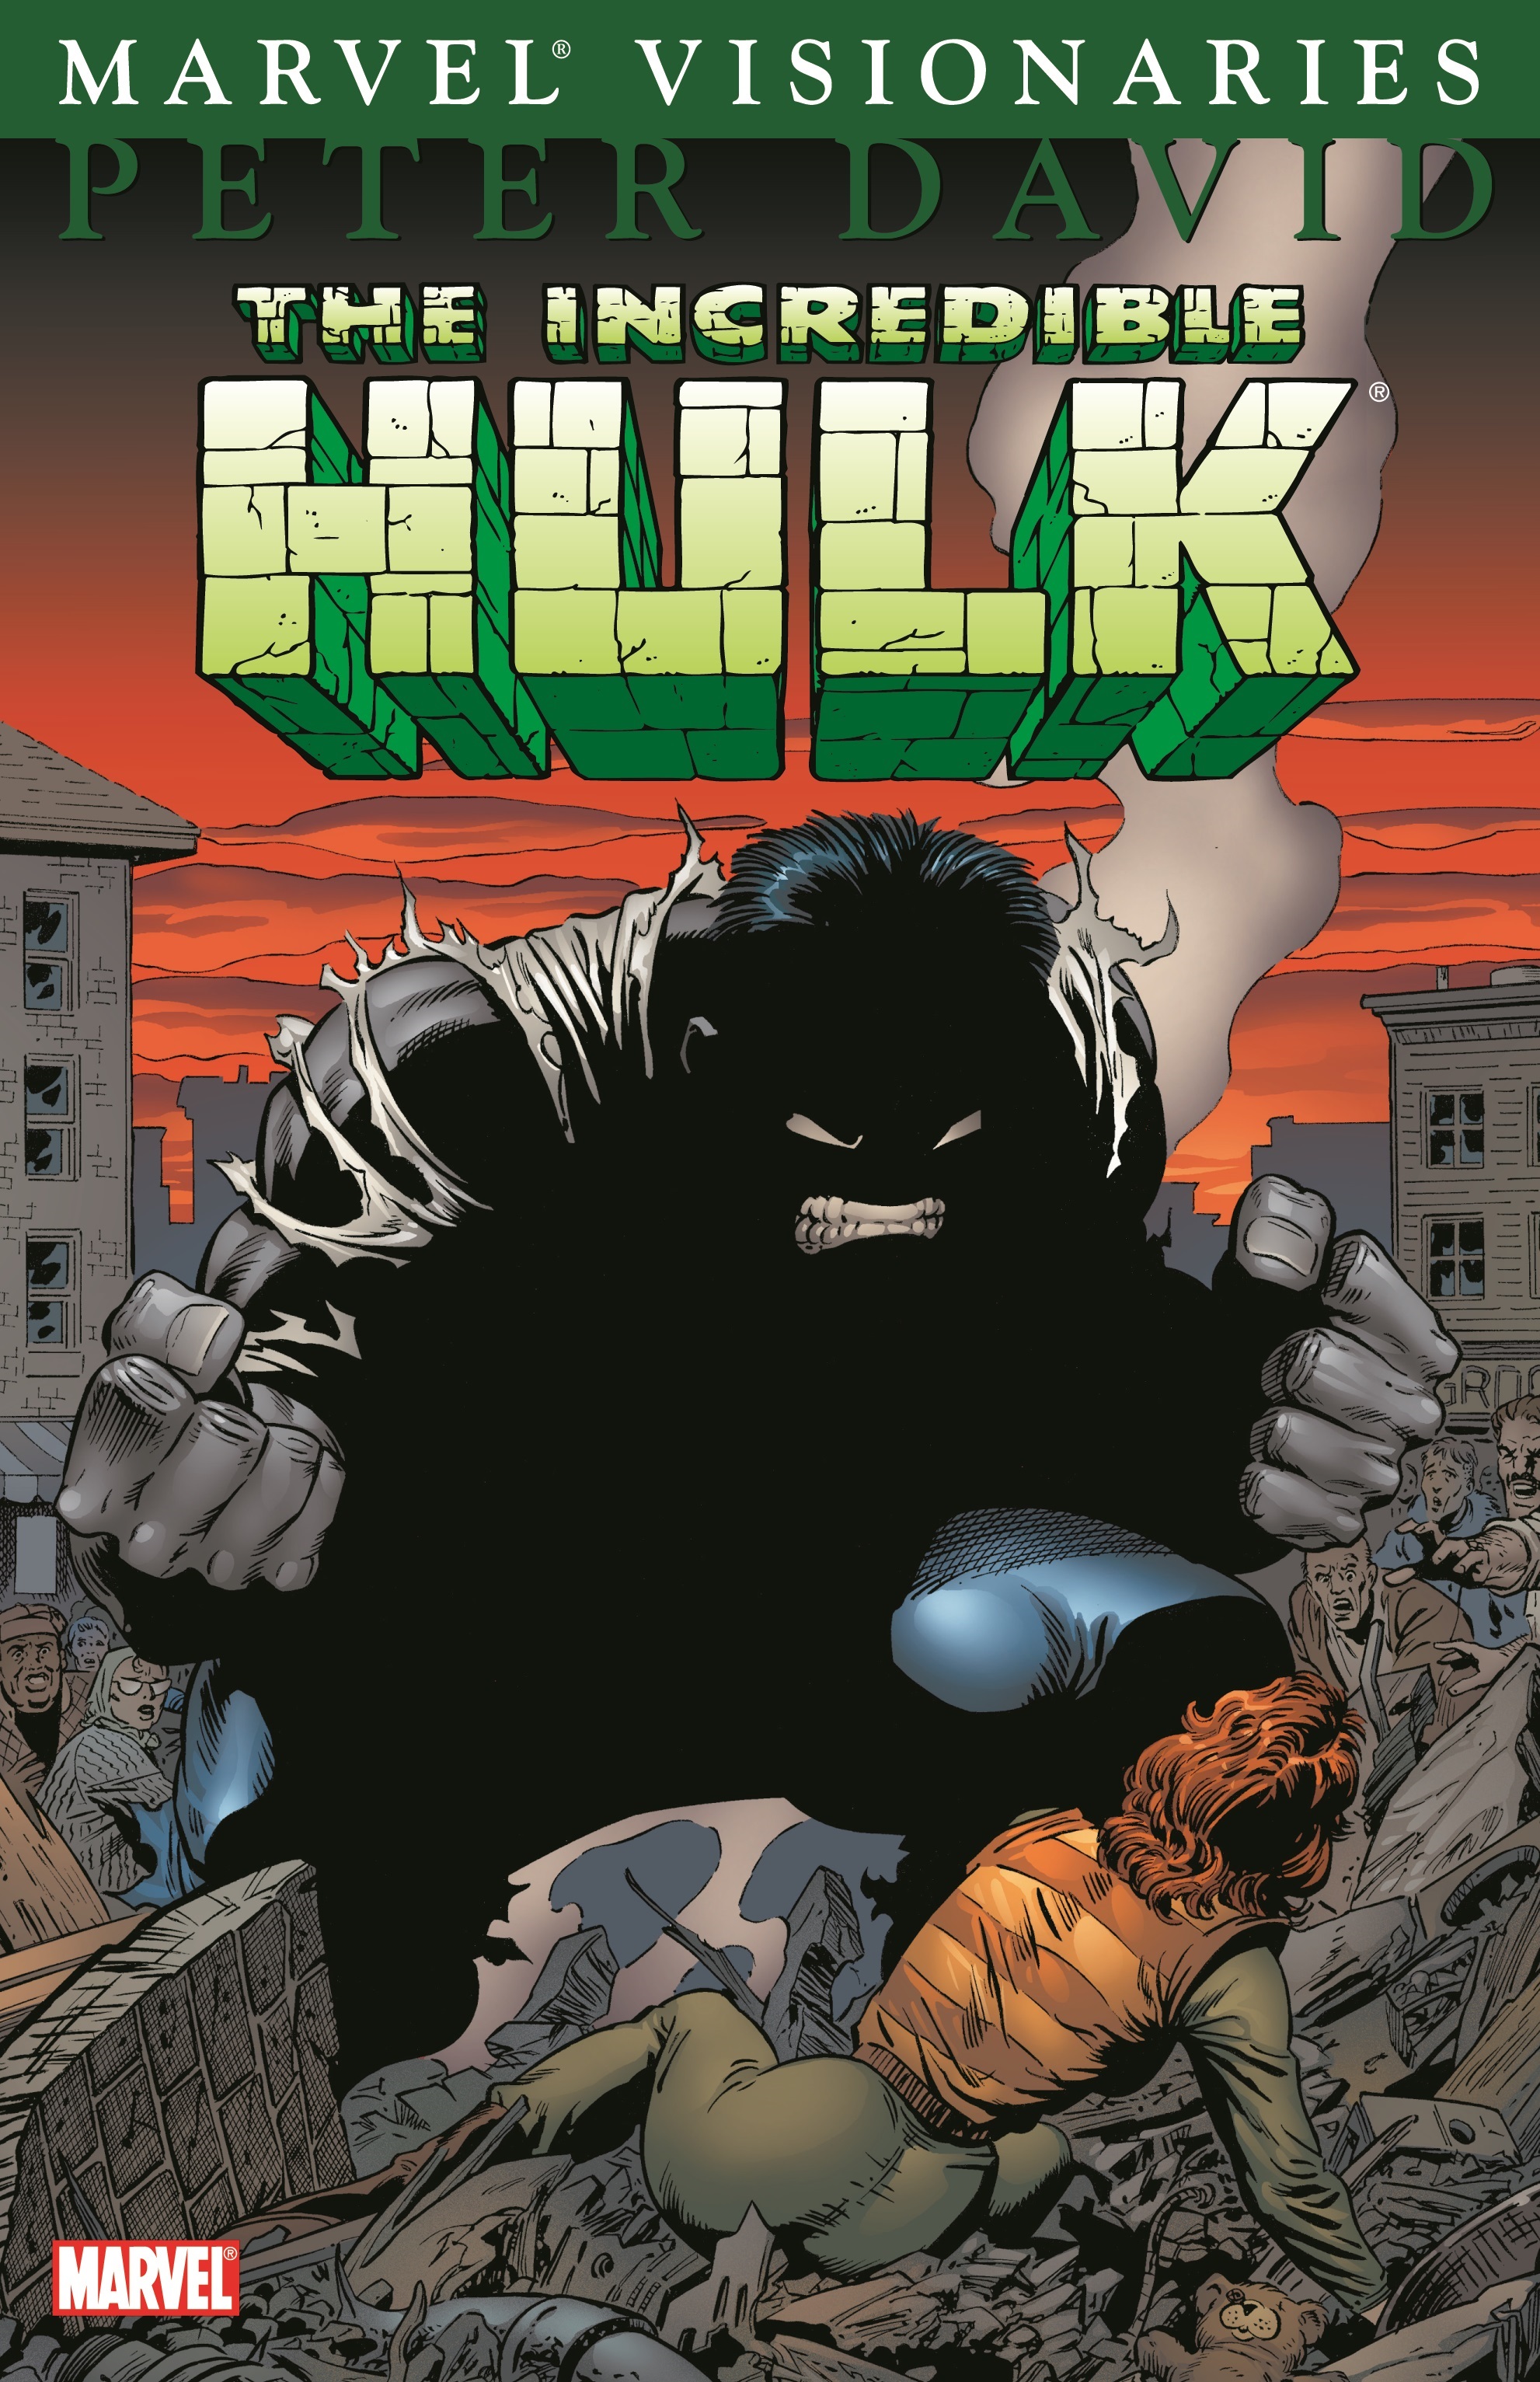 Hulk Visionaries: Peter David Vol. 1 (Trade Paperback)